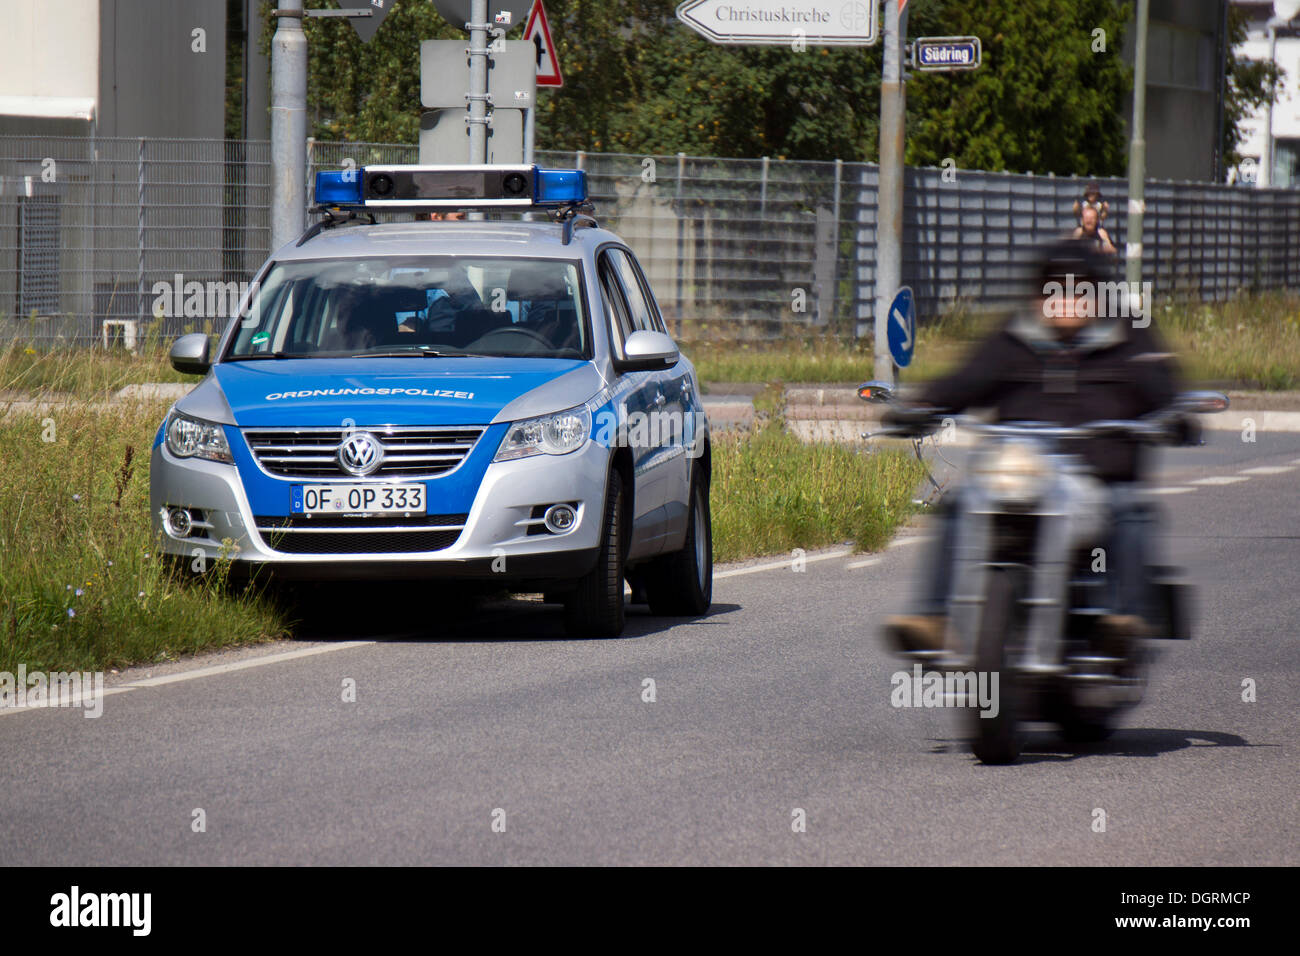 La police municipale au cours de la régulation de vitesse des motos Banque D'Images